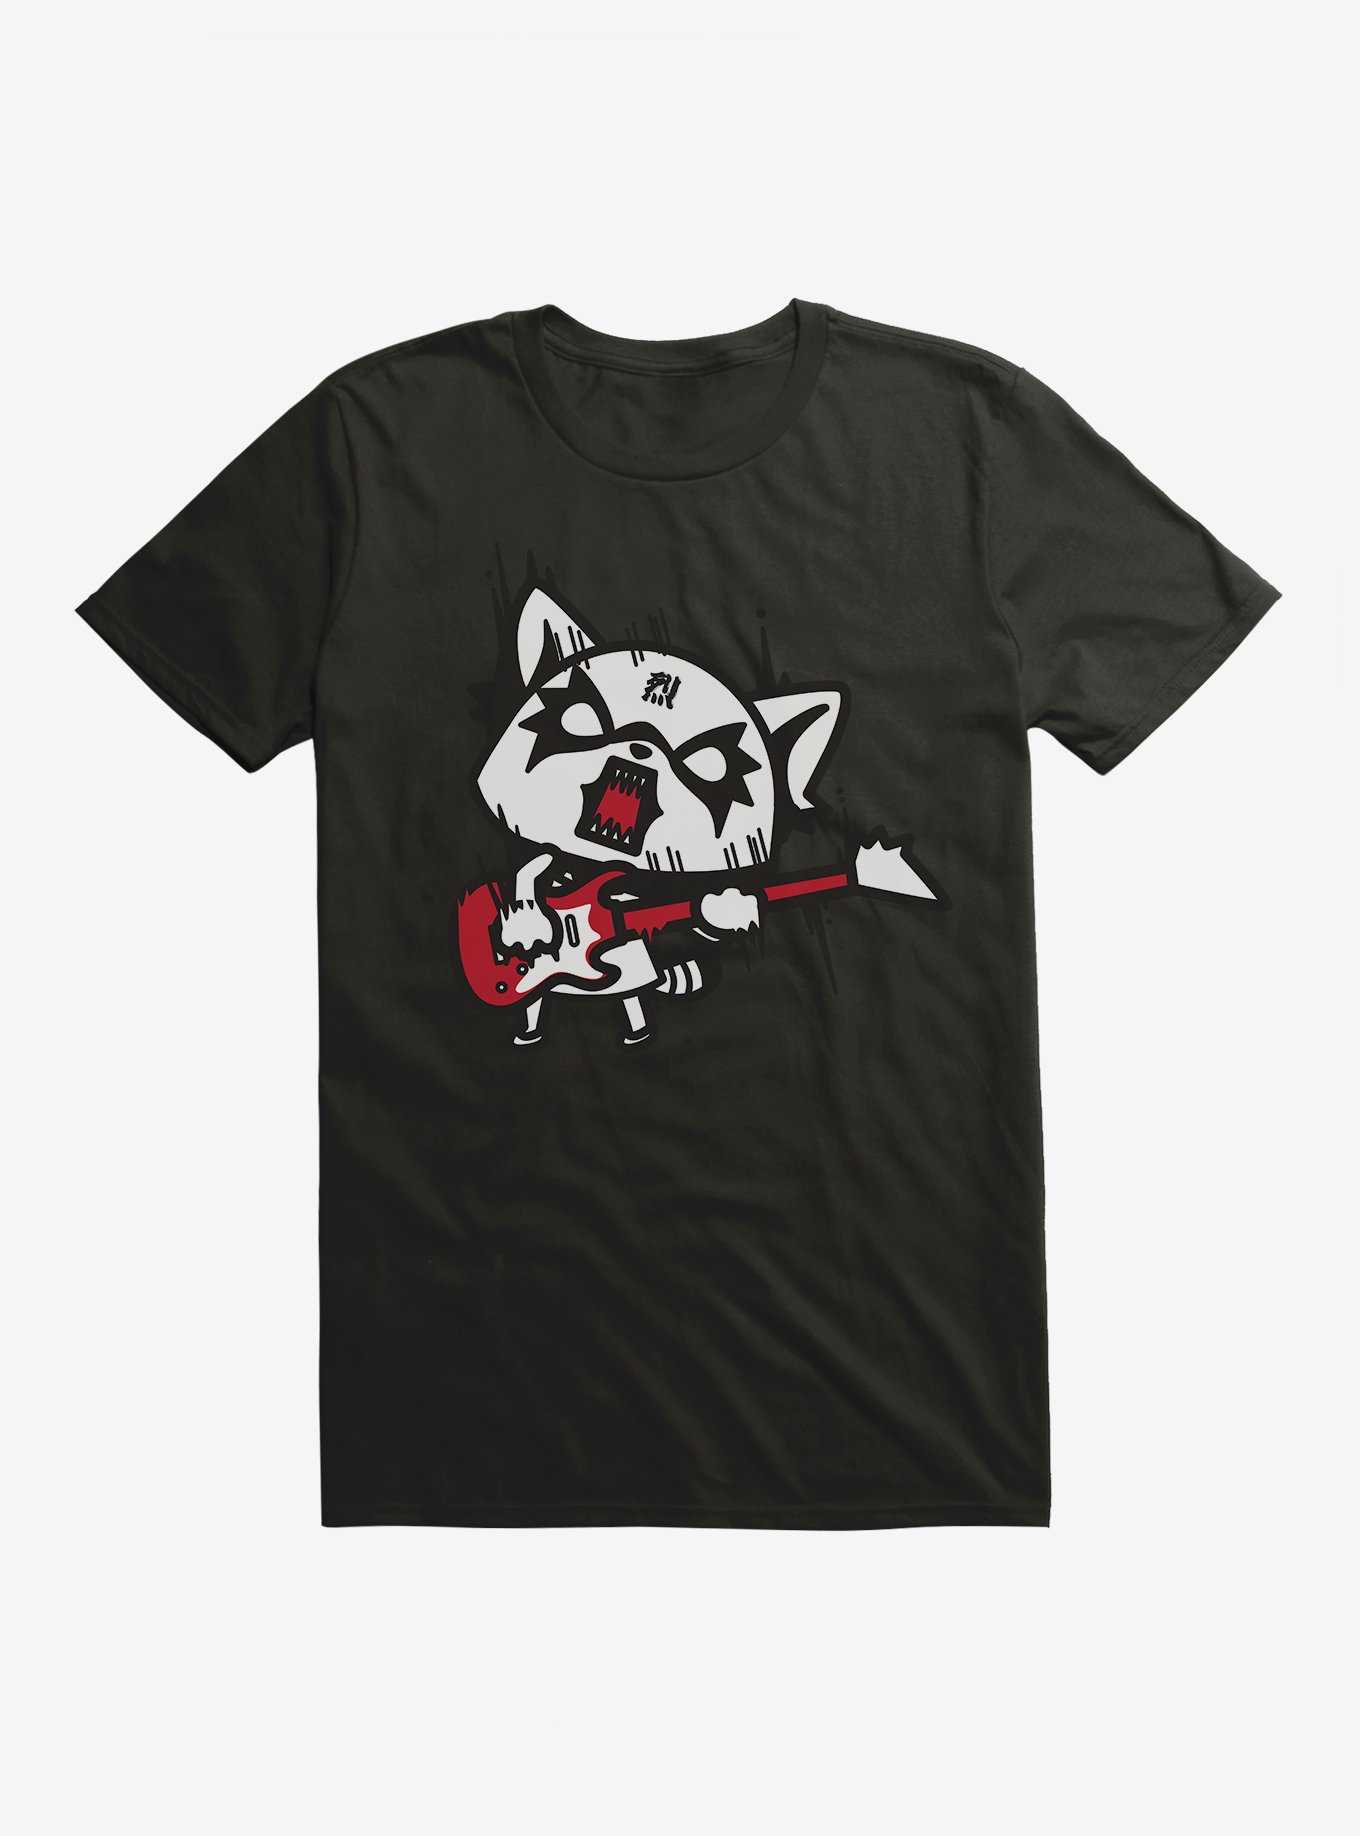 Aggretsuko Metal Hard Rock T-Shirt, , hi-res